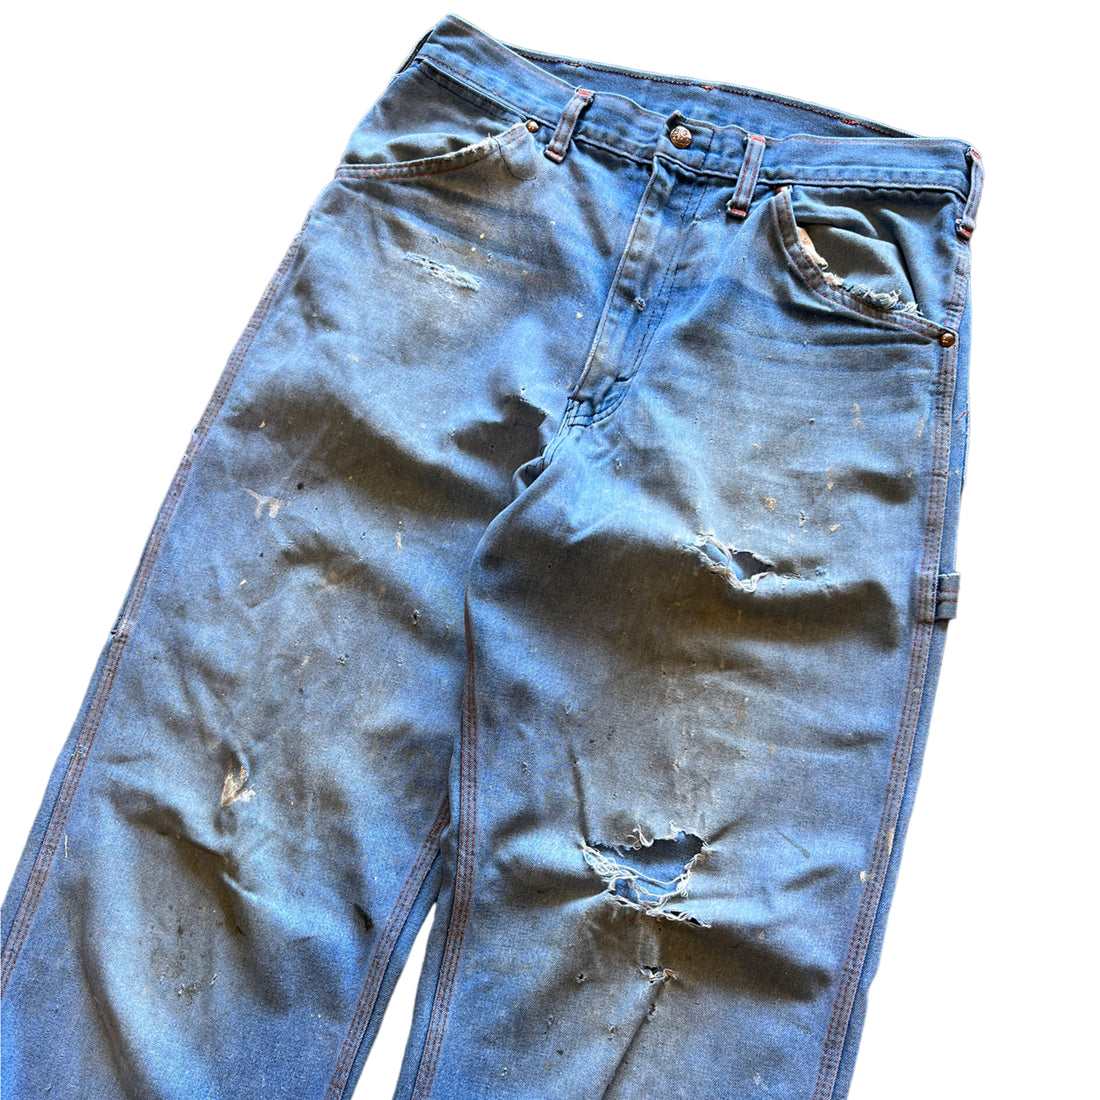 BIG MAC DISTRESSED BLUE JEANS ‘30X30’ - 1970S